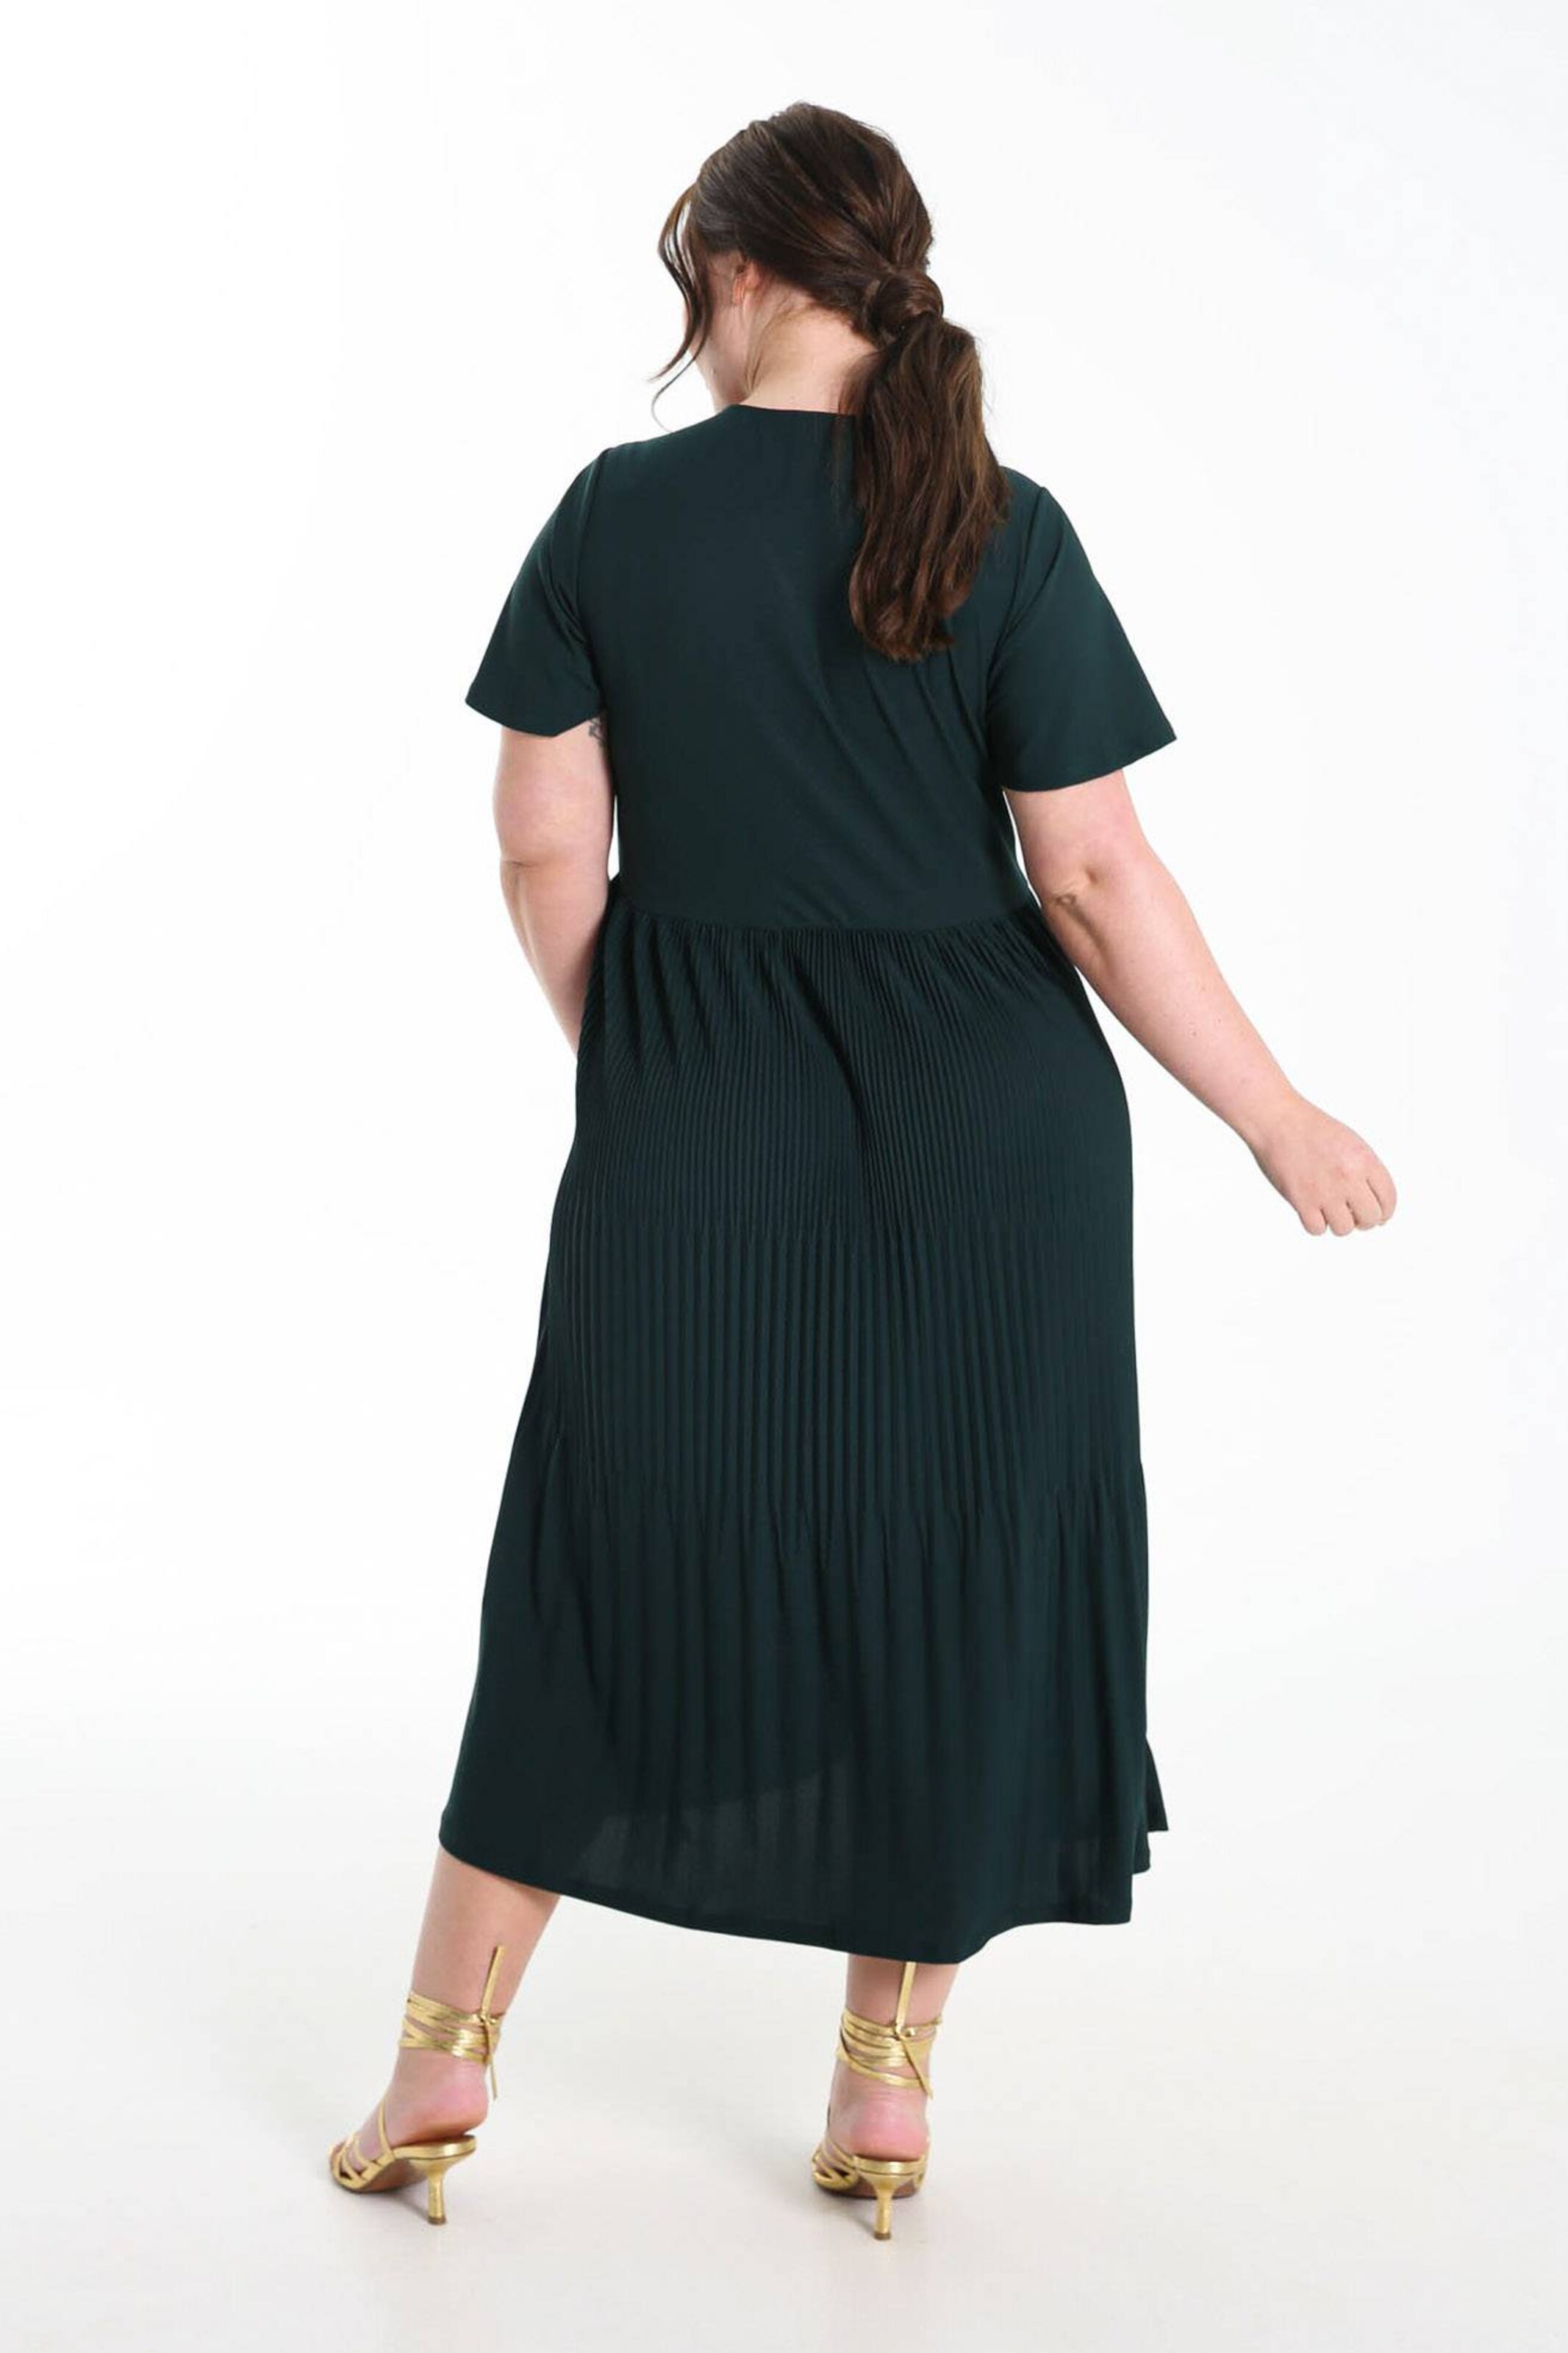 Frauen Große Größen Promiss Blusenkleid in Grün - PM43805